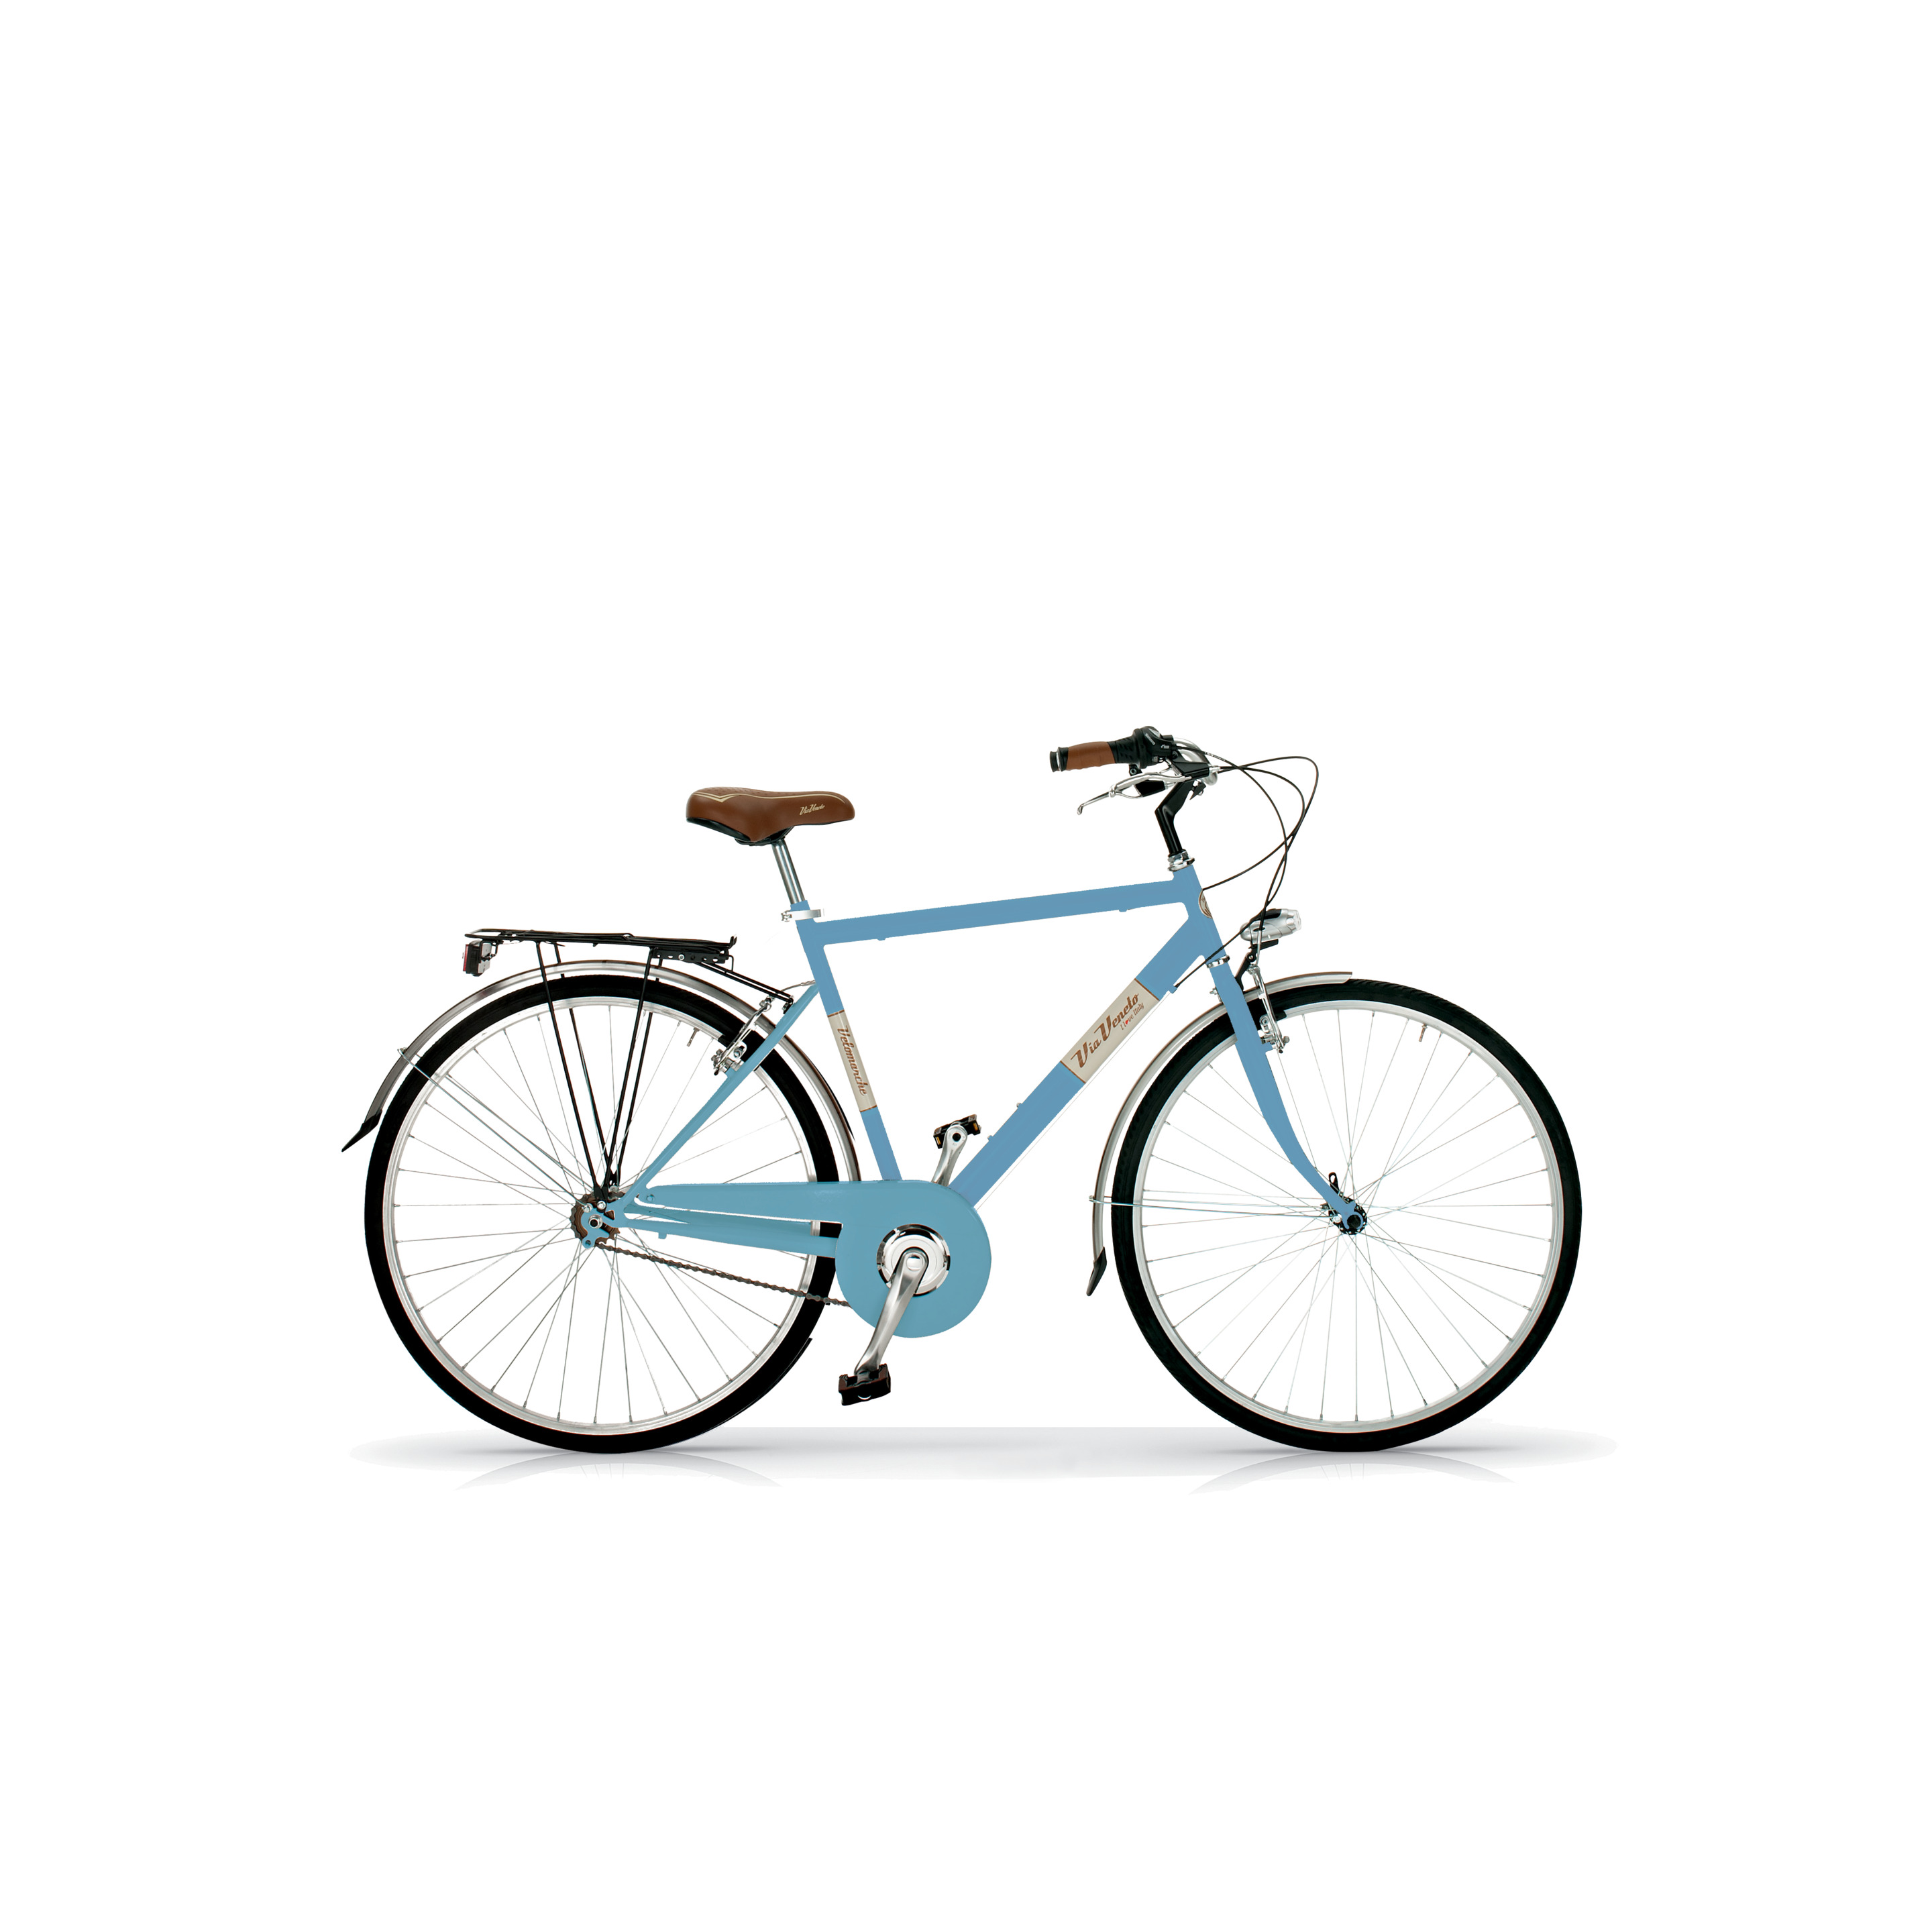 Bicicleta Via Veneto 605man, Cuadro De Acero De 50cm, Ruedas De 700x35c, 6 Velocidades Azul